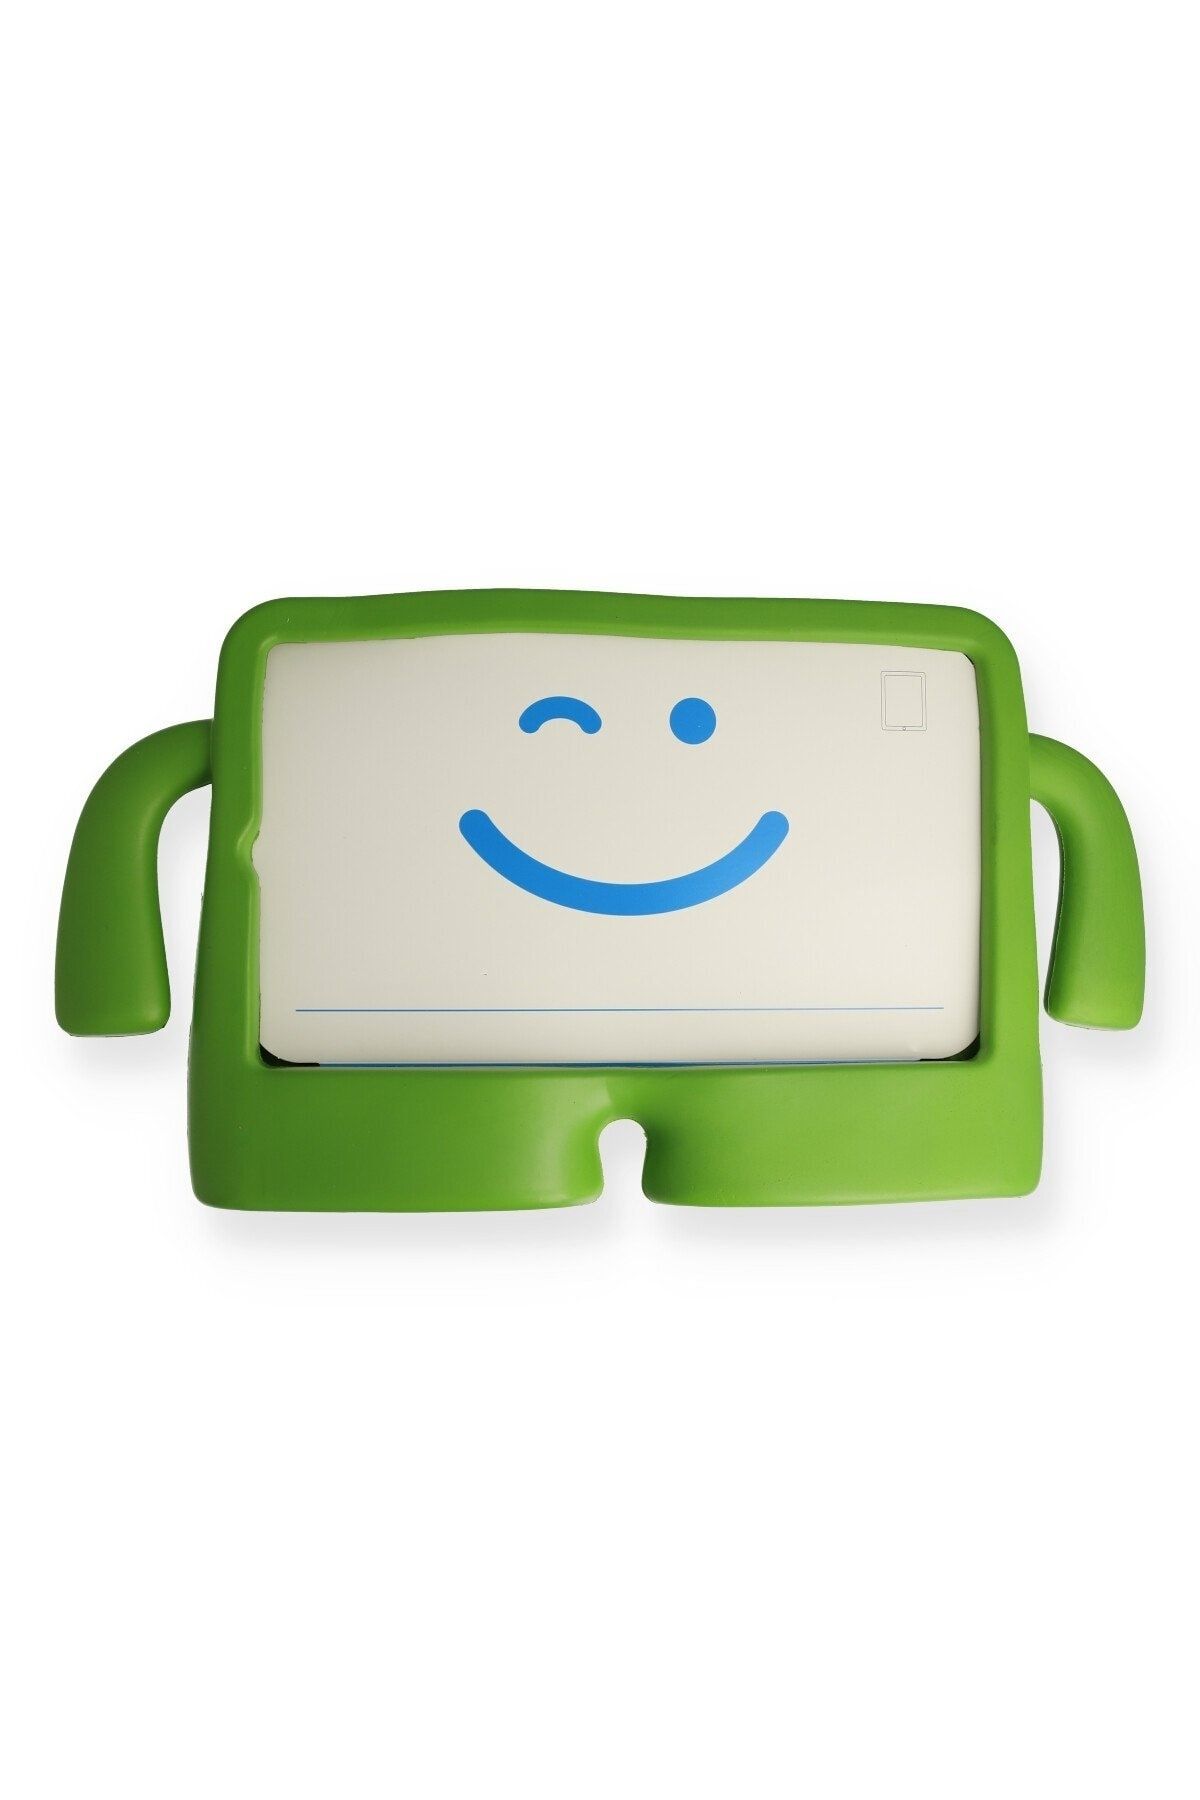 Bilişim Aksesuar Ipad Air 3 10.5 Kılıf Karakter Tablet Silikon - Yeşil